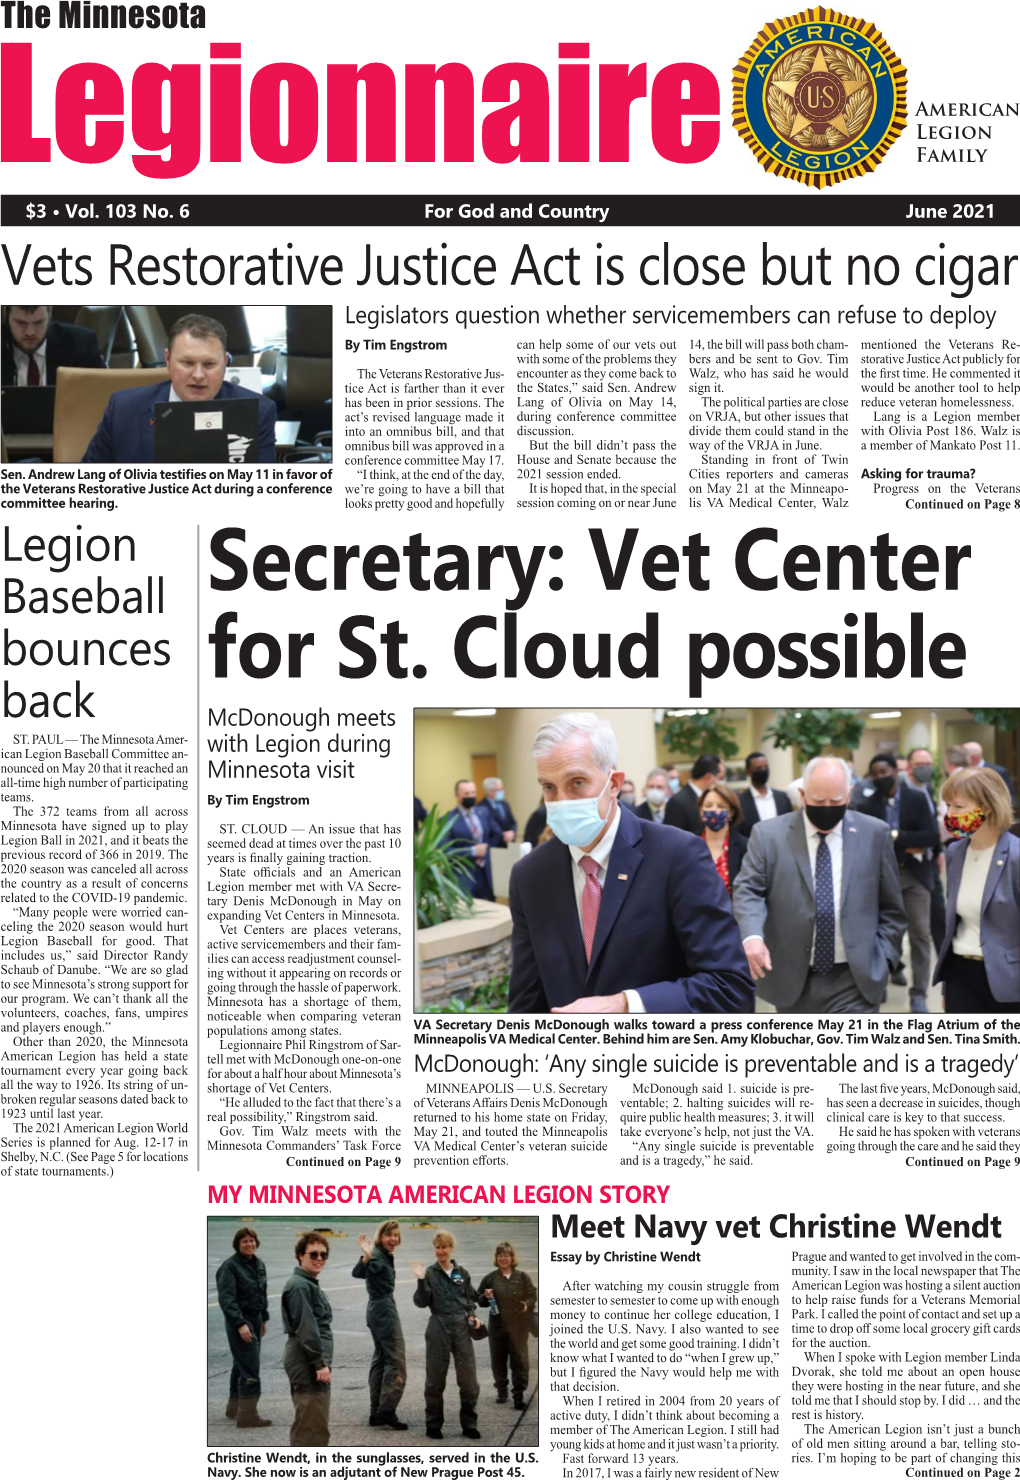 Secretary: Vet Center for St. Cloud Possible